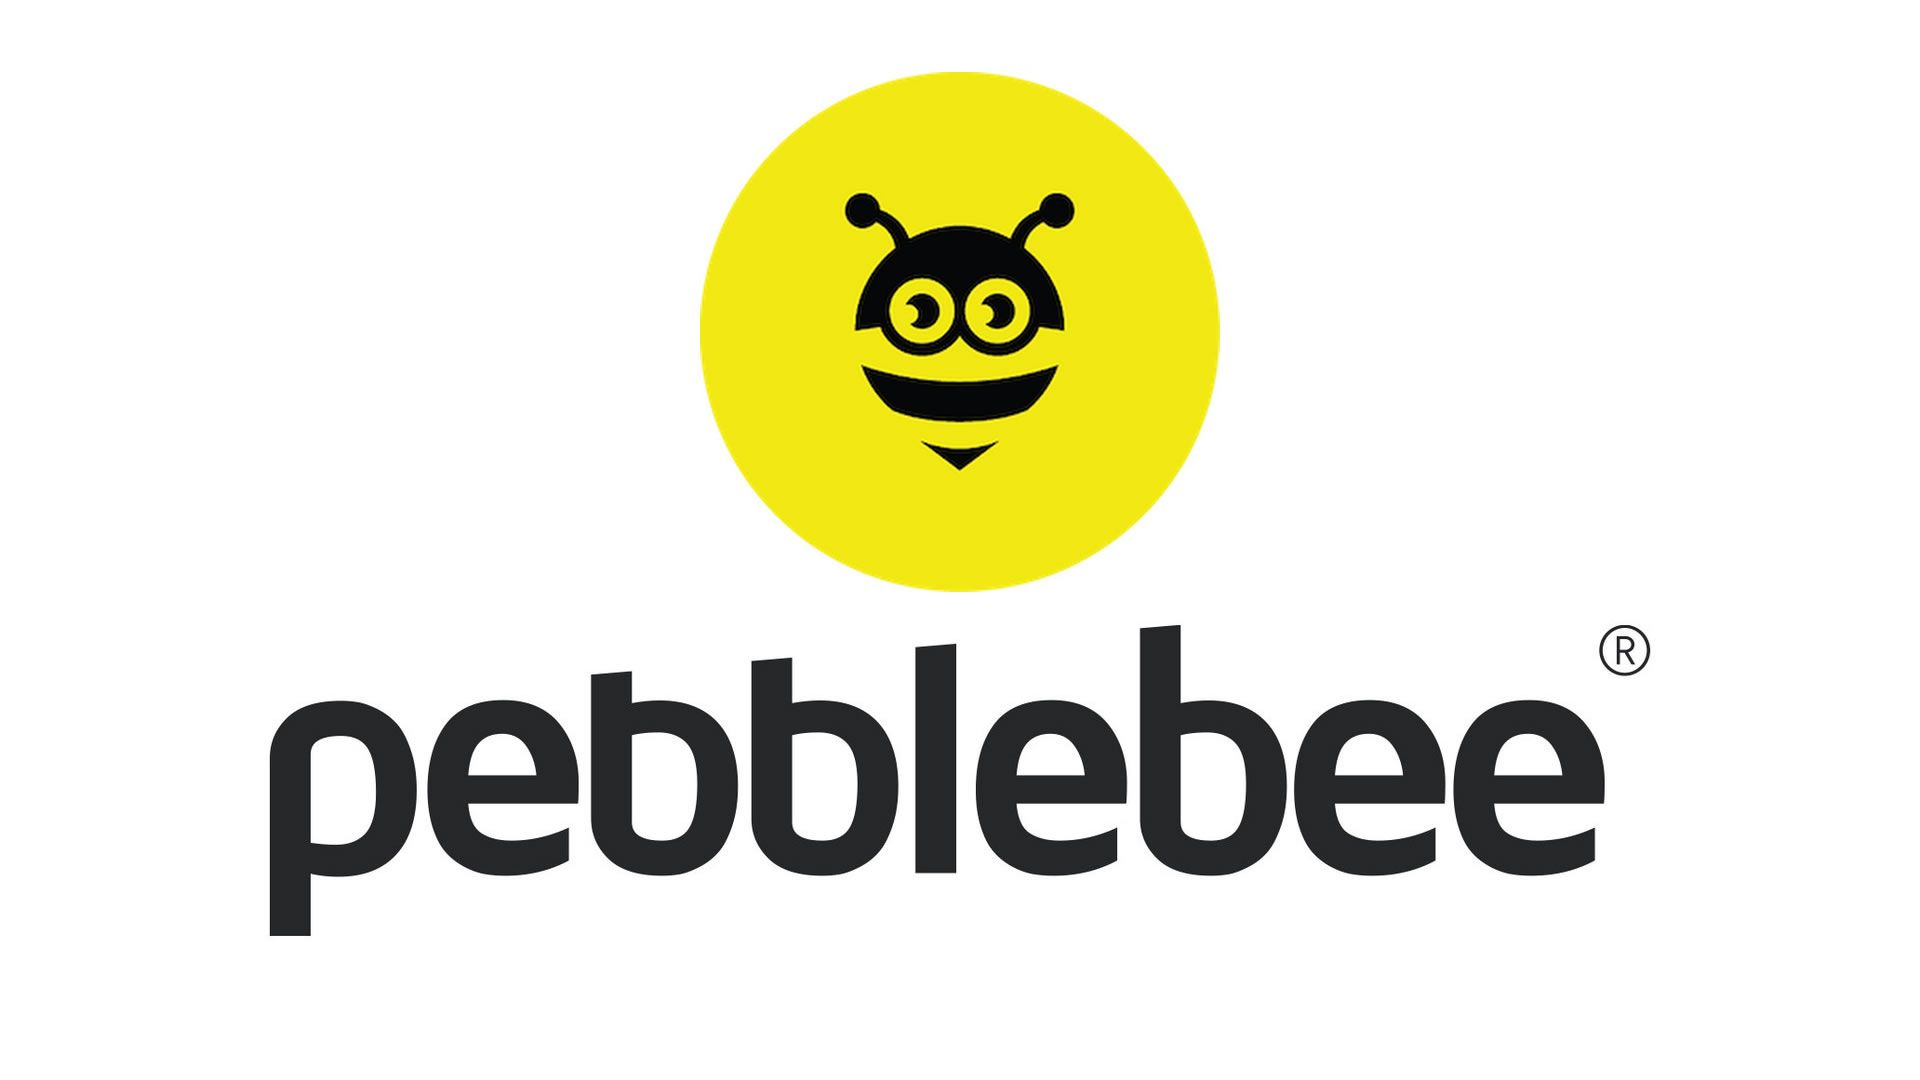 Pebble Bee